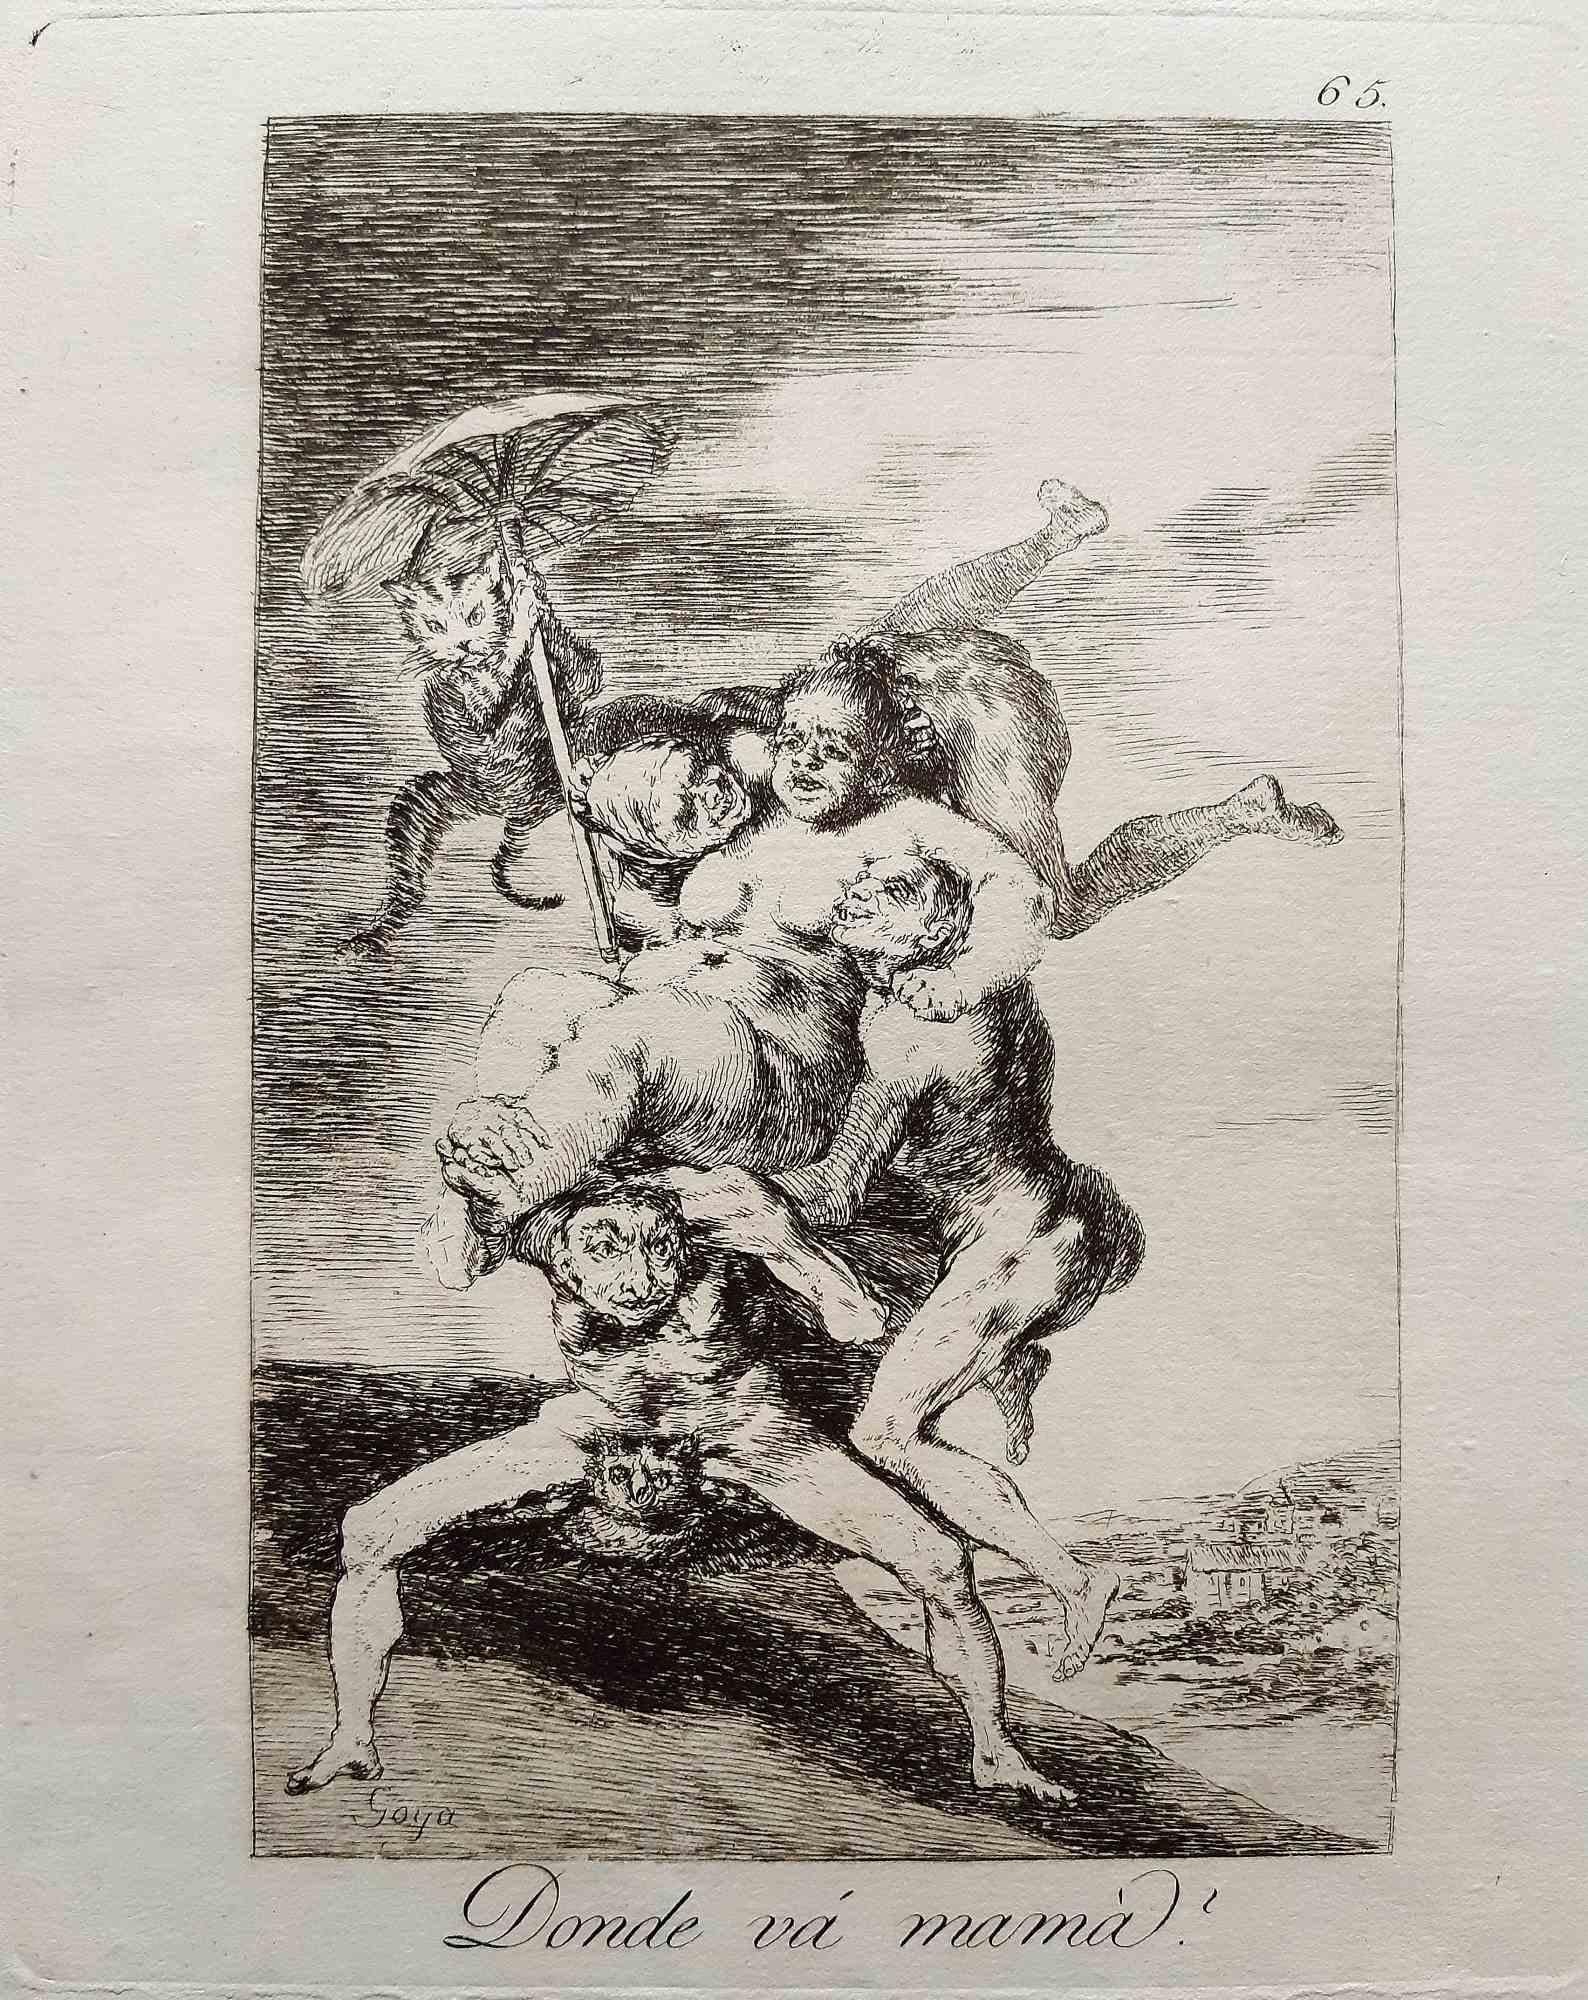 Donde va Mama de Los Caprichos est une œuvre d'art originale réalisée par l'artiste Francisco Goya et publiée pour la première fois en 1799.

Eau-forte et aquatinte sur papier.

Cette gravure fait partie de la première édition de "Los Caprichos"